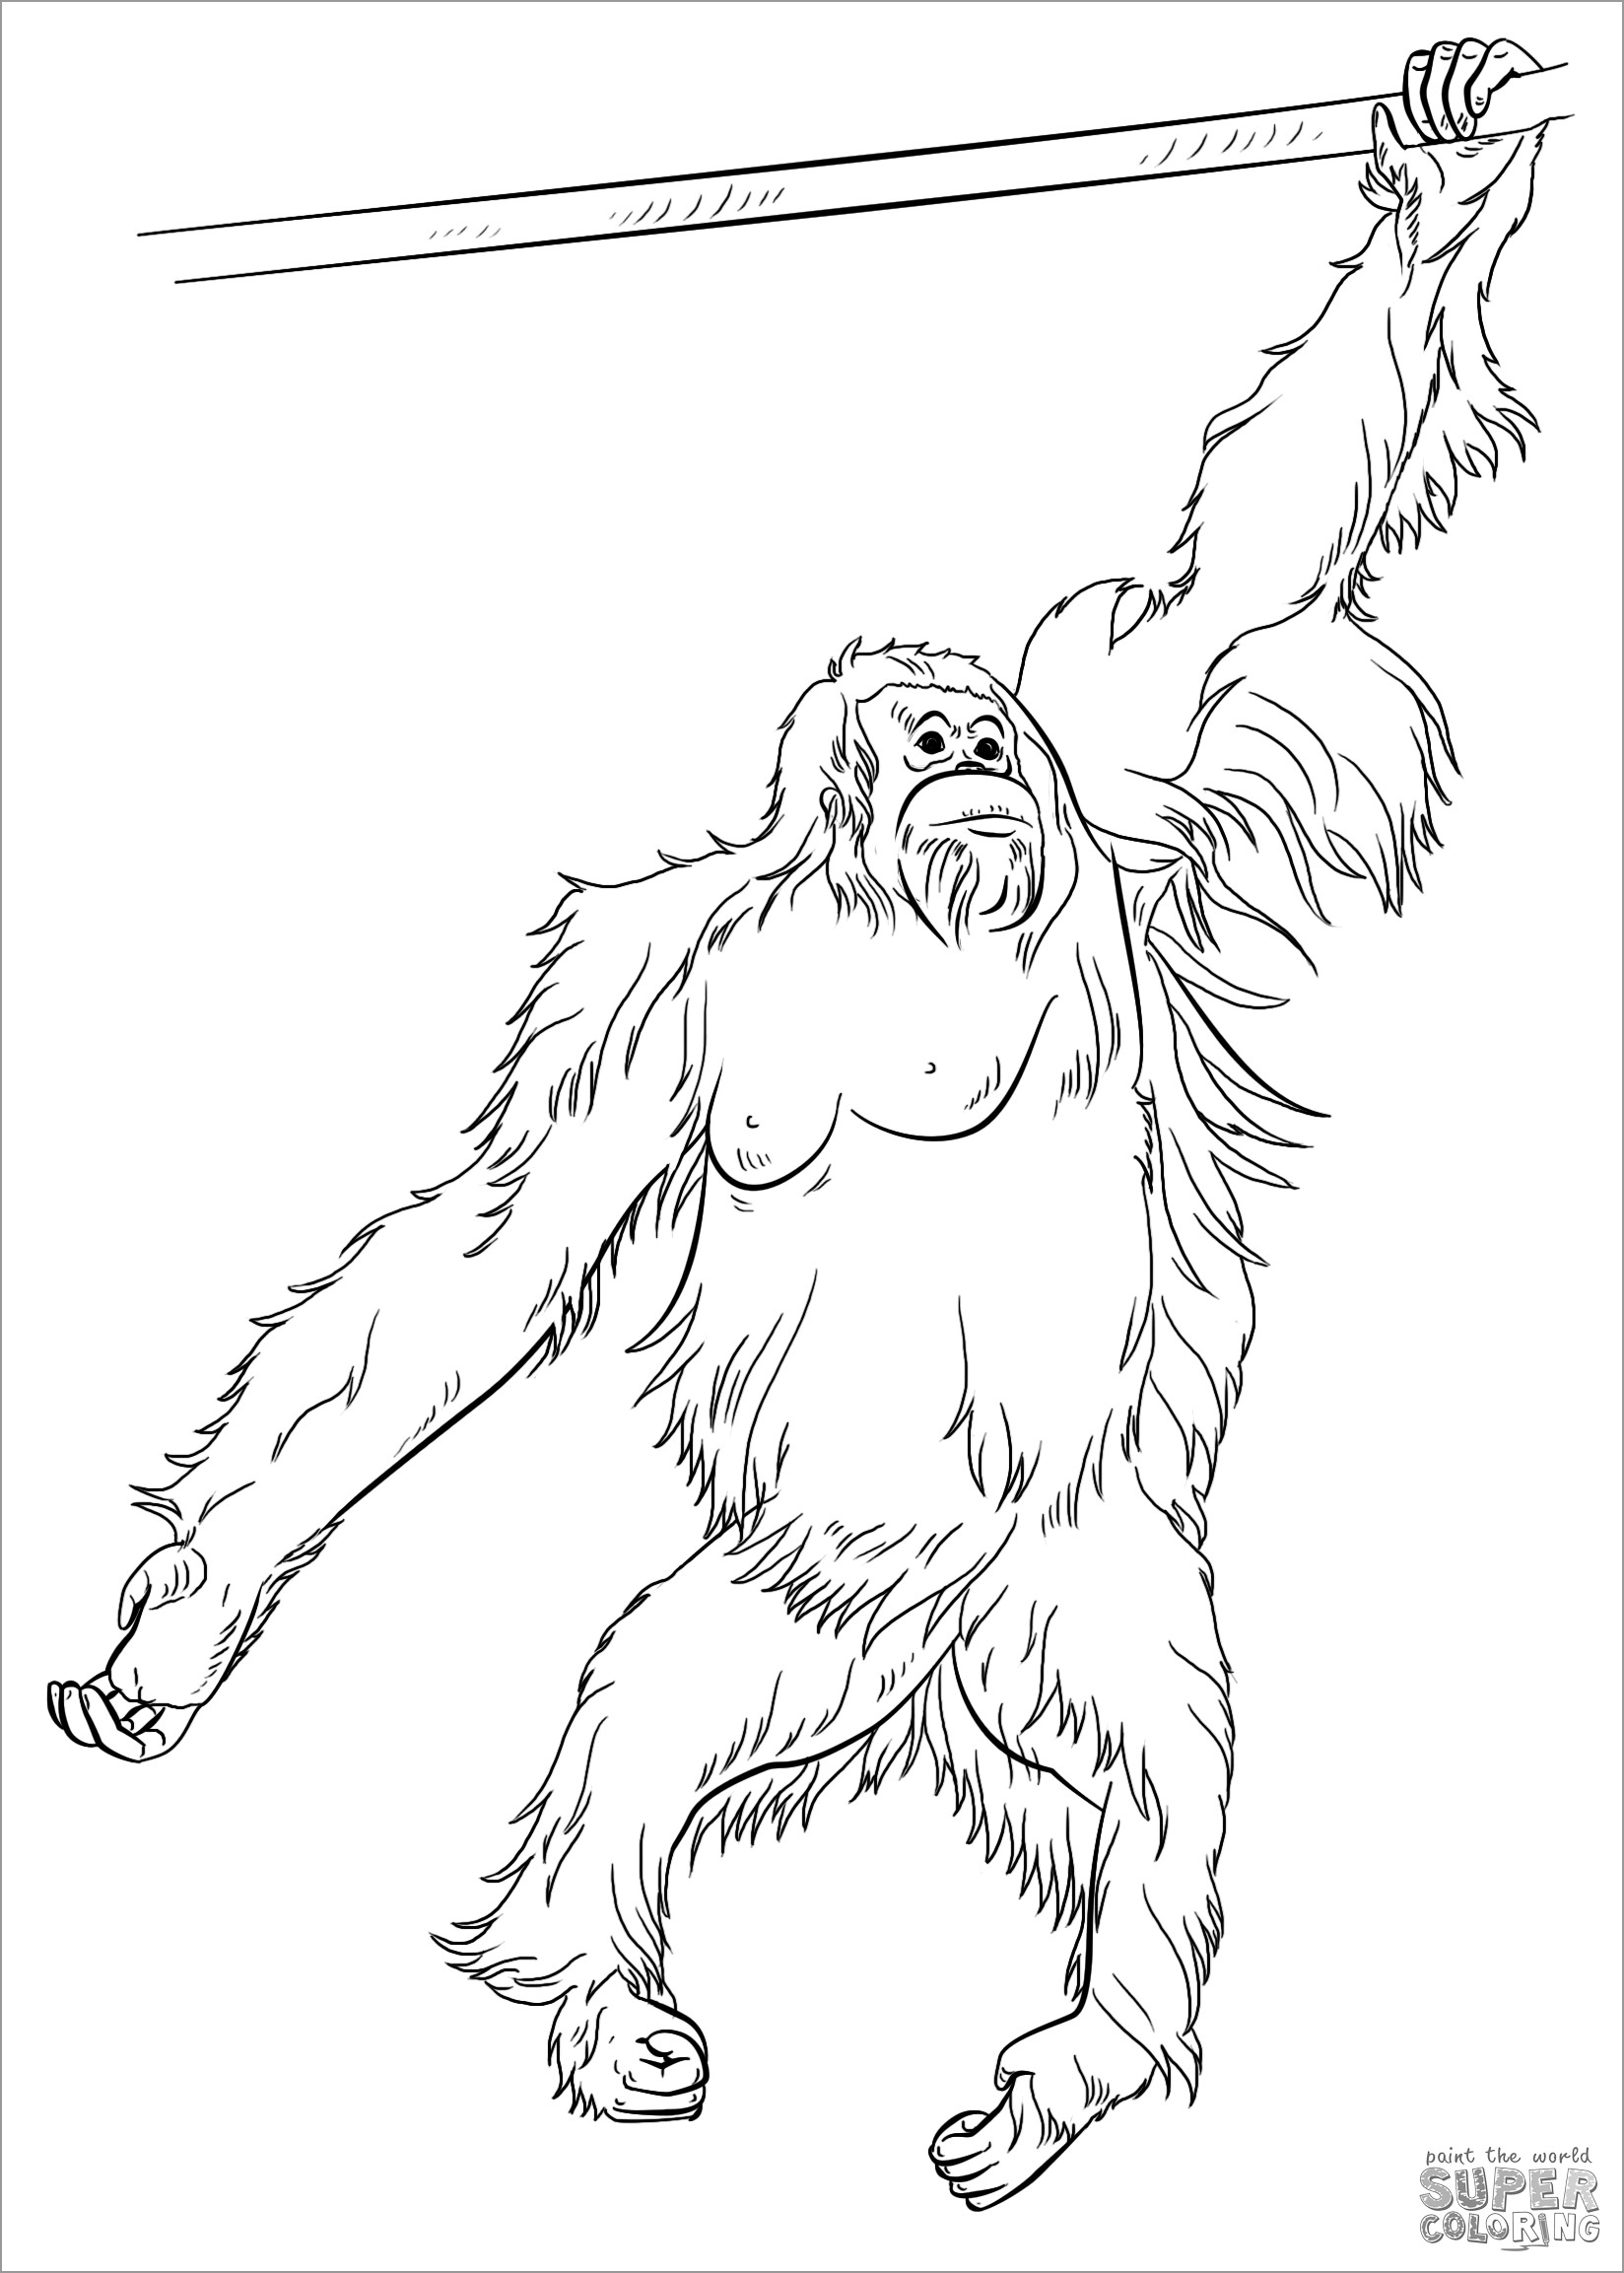 Sumatran orangutan Coloring Page